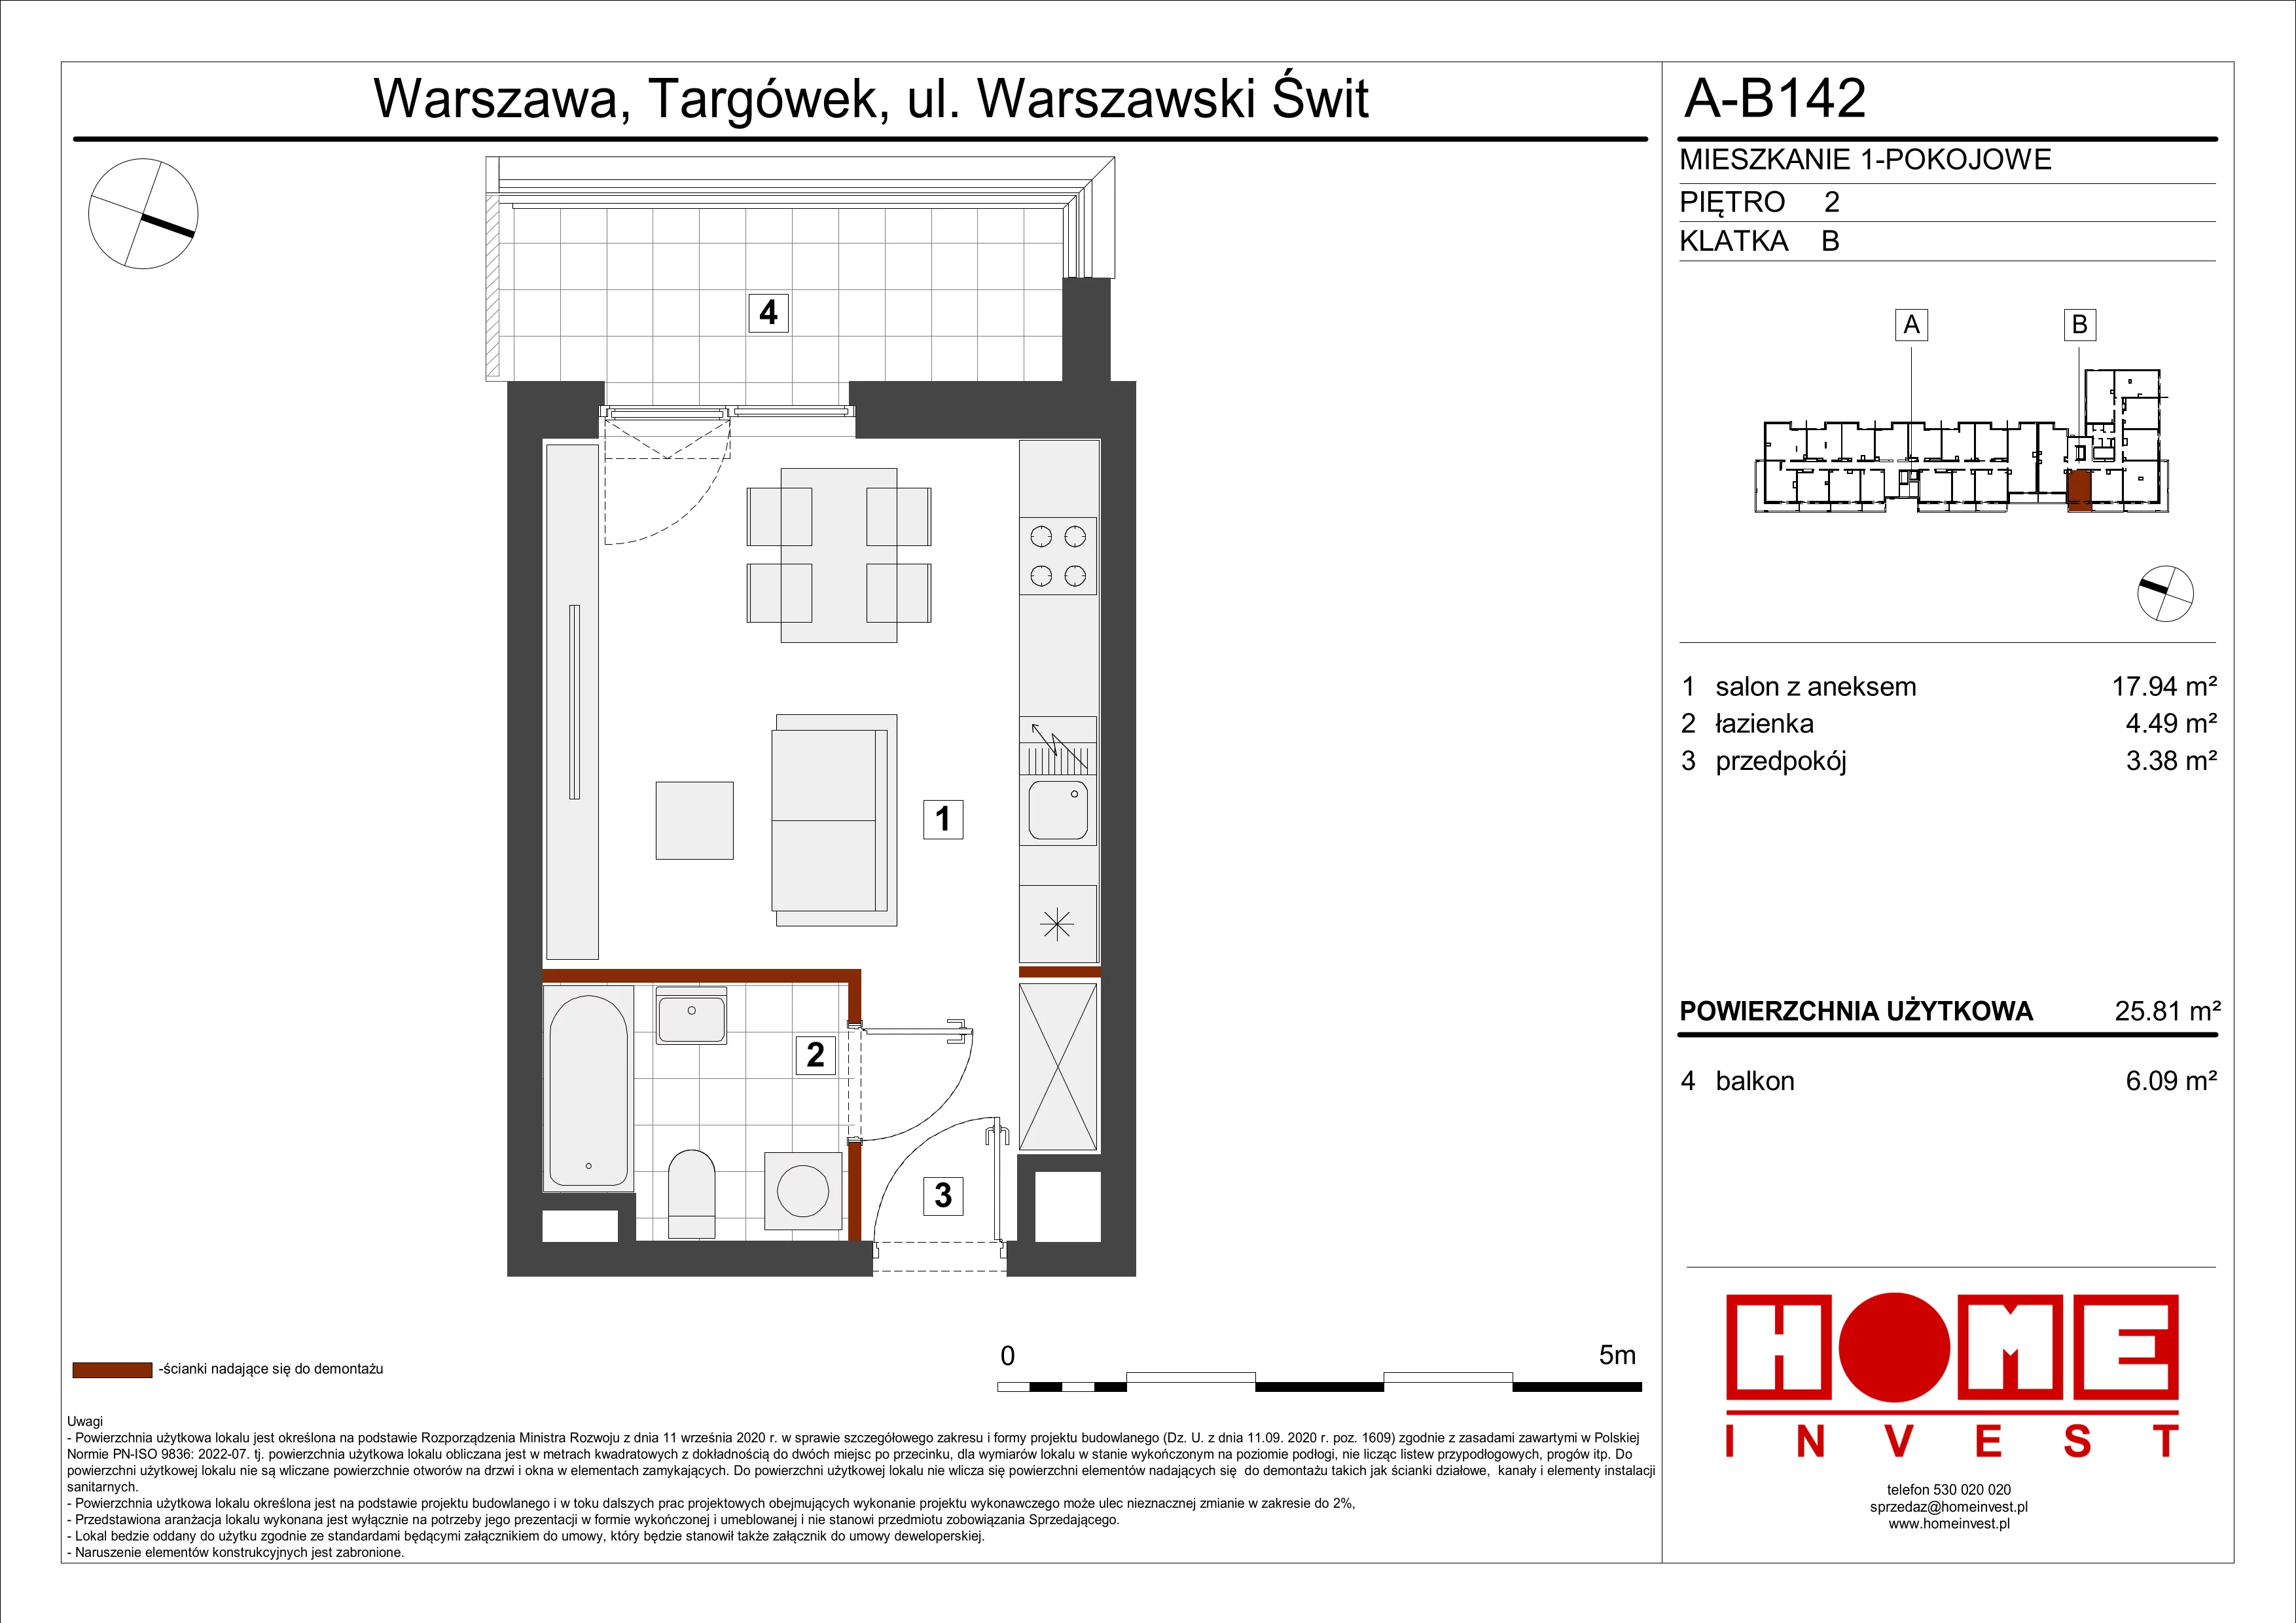 Mieszkanie 25,81 m², piętro 2, oferta nr A-B142, Warszawski Świt, Warszawa, Targówek, Bródno, ul. Warszawski Świt 5